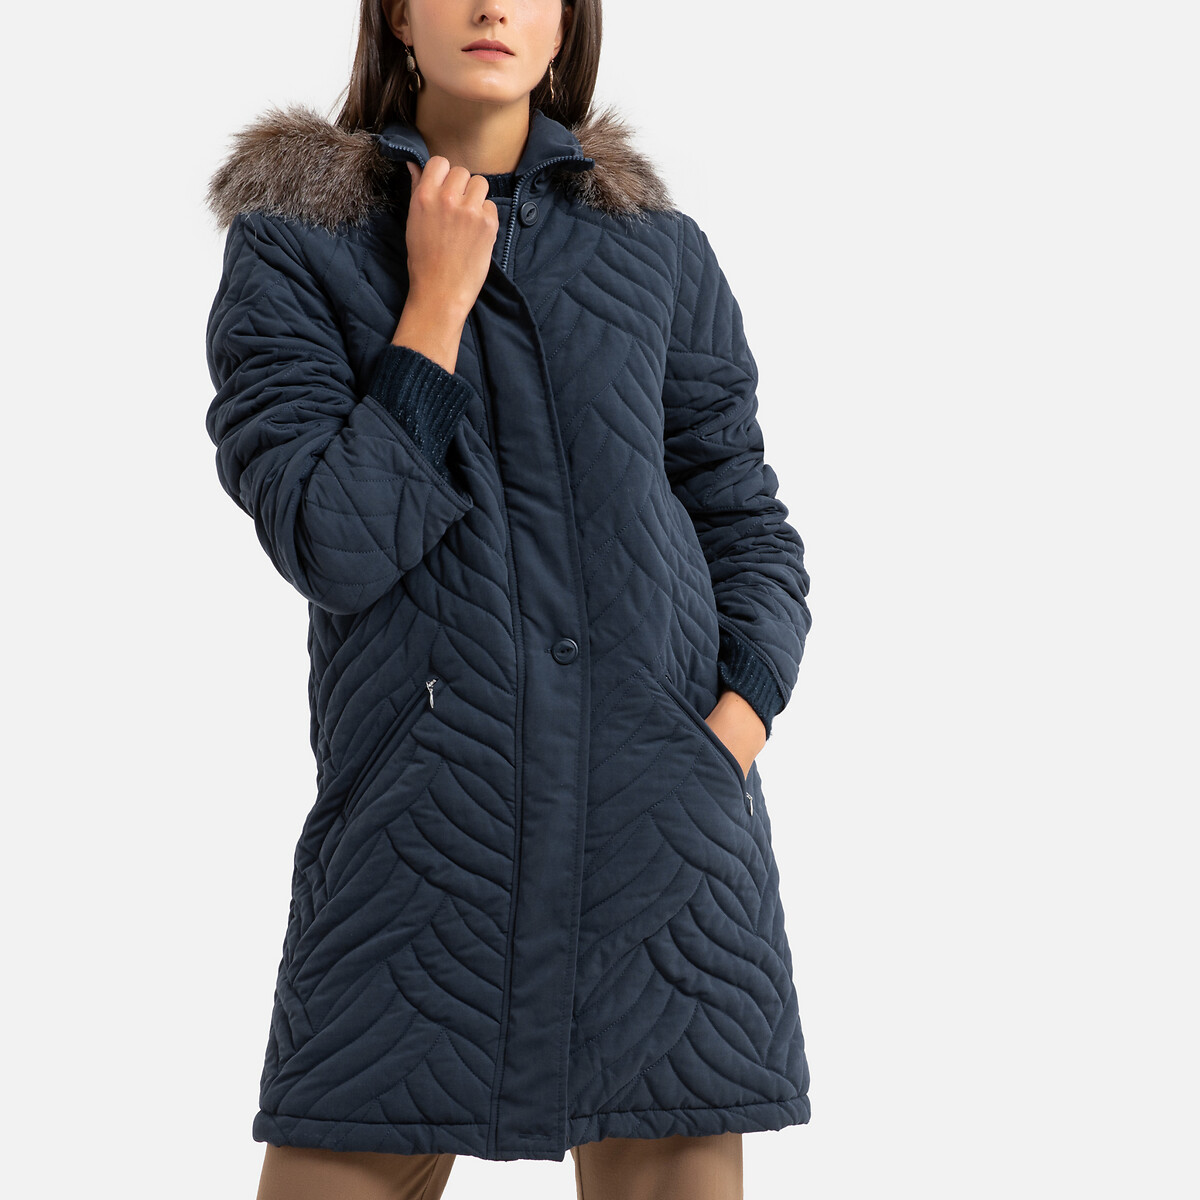 Куртка La Redoute Стеганая средней длины с капюшоном зимняя модель 48 (FR) - 54 (RUS) синий, размер 48 (FR) - 54 (RUS) Стеганая средней длины с капюшоном зимняя модель 48 (FR) - 54 (RUS) синий - фото 1